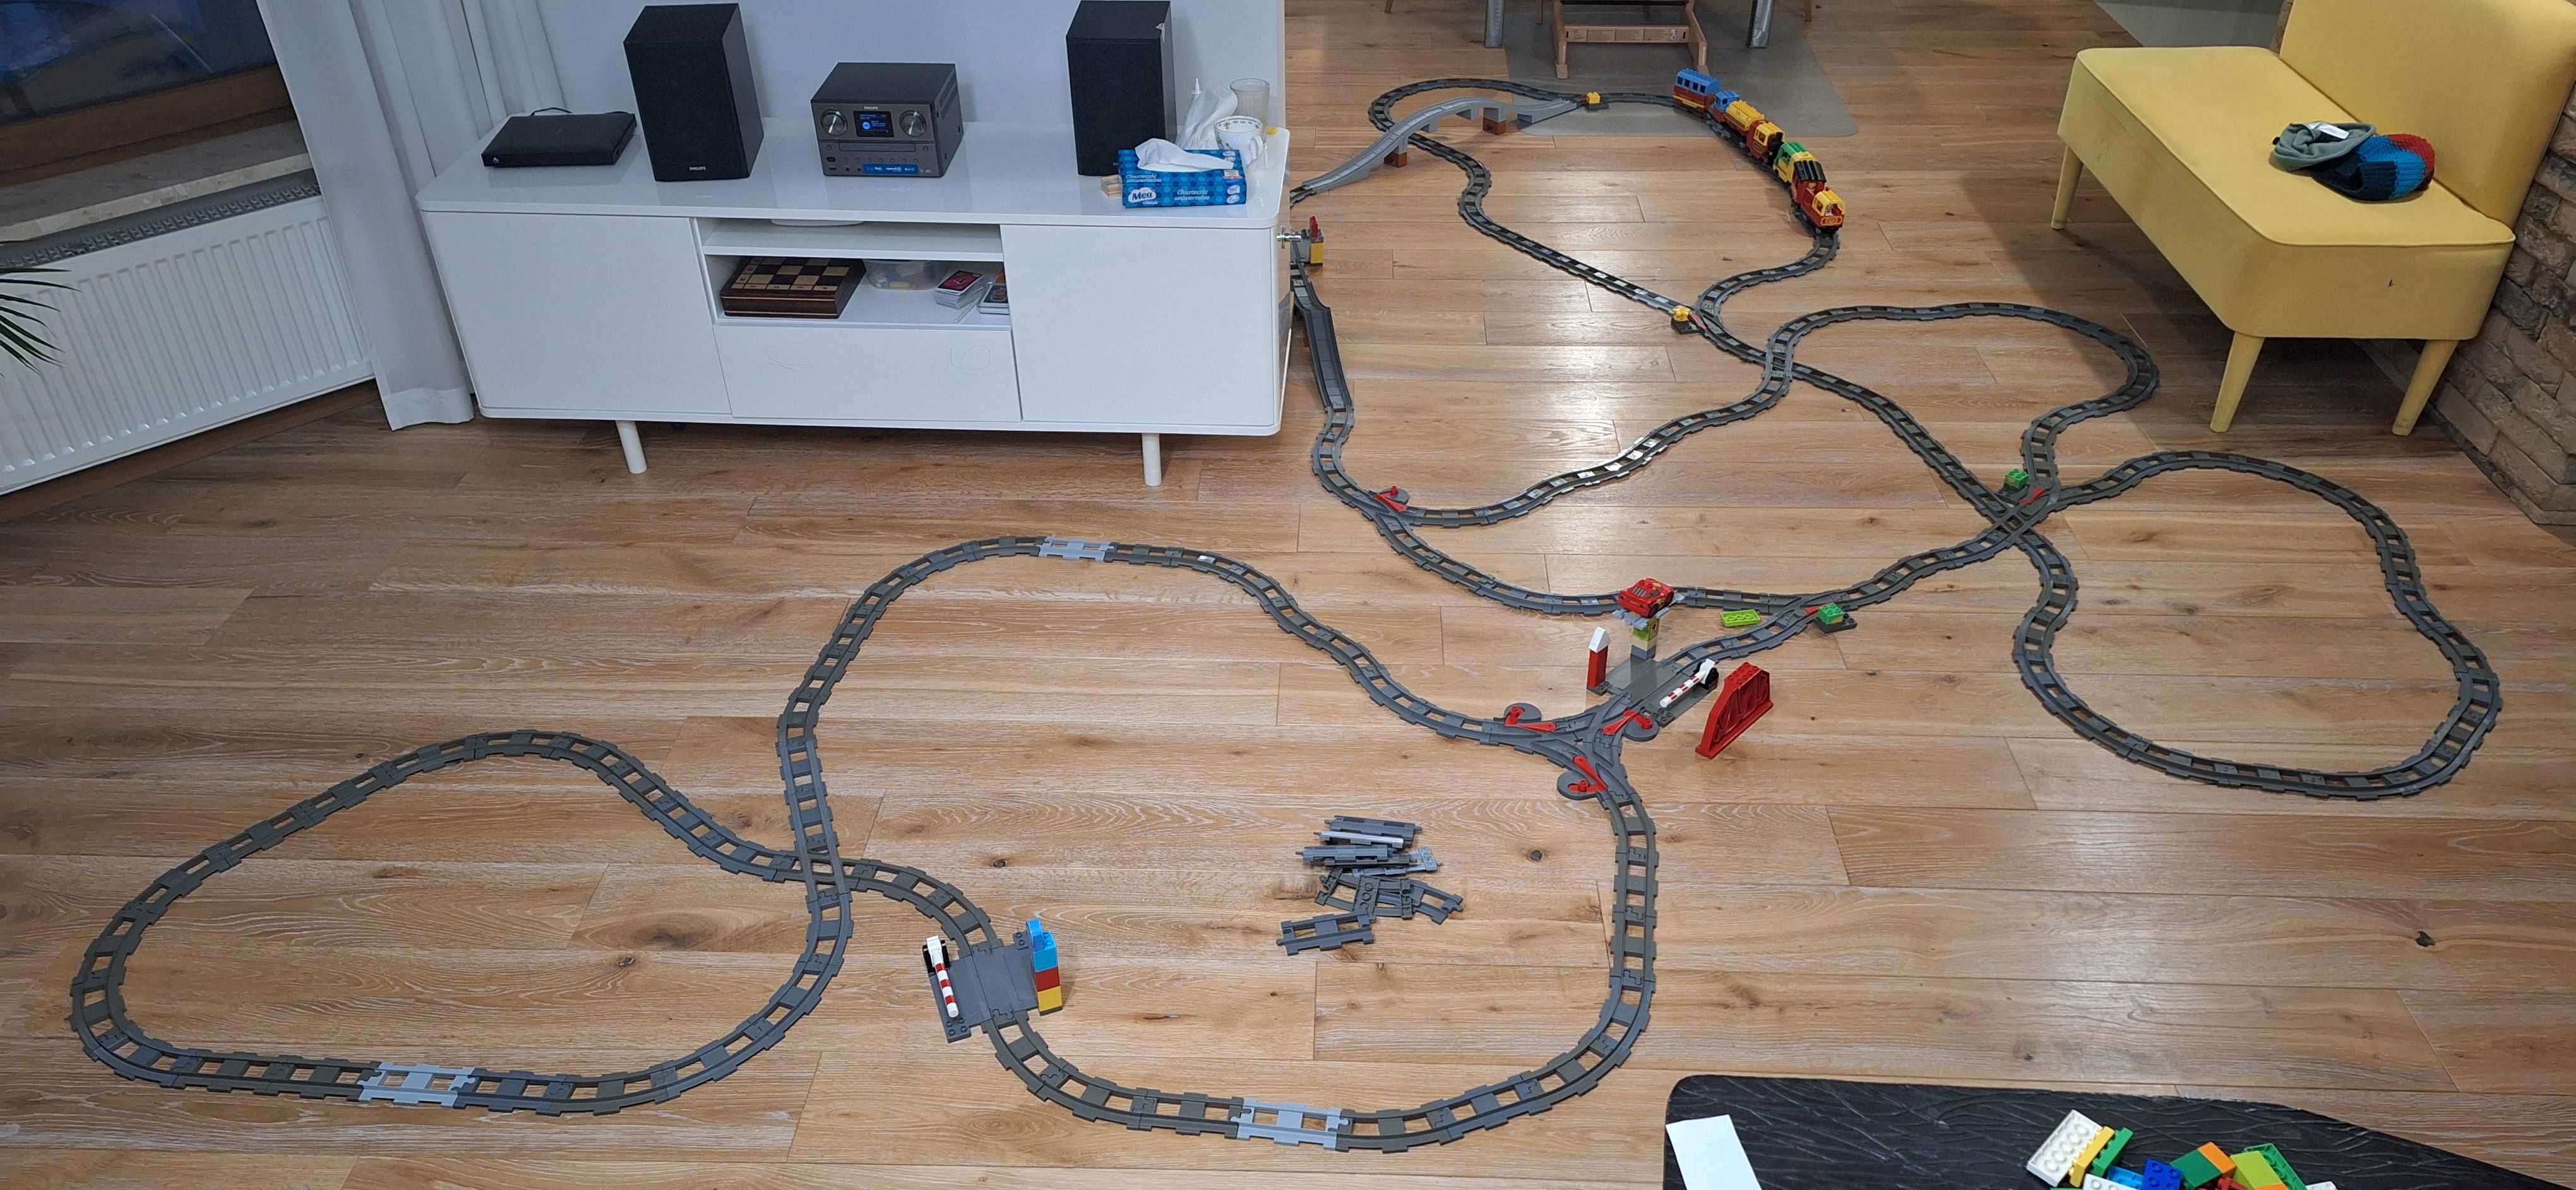 Ogromny Zestaw Kolejowy LEGO - tory, lokomotywy, wagony, rozjazdy itd.